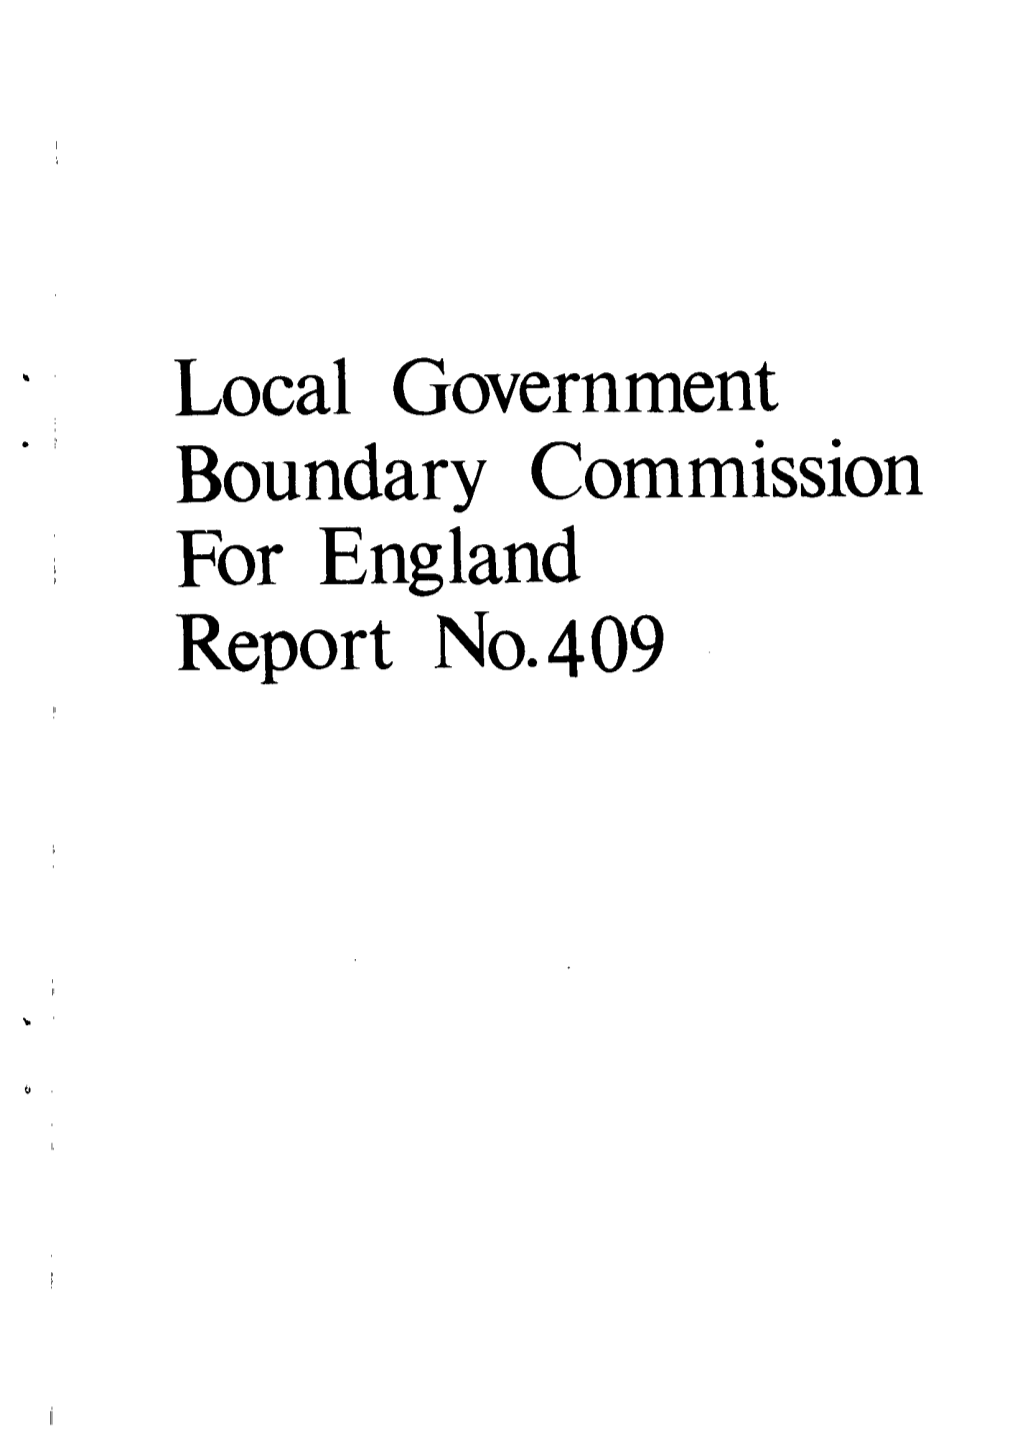 Local Government for England Report No. 4 09